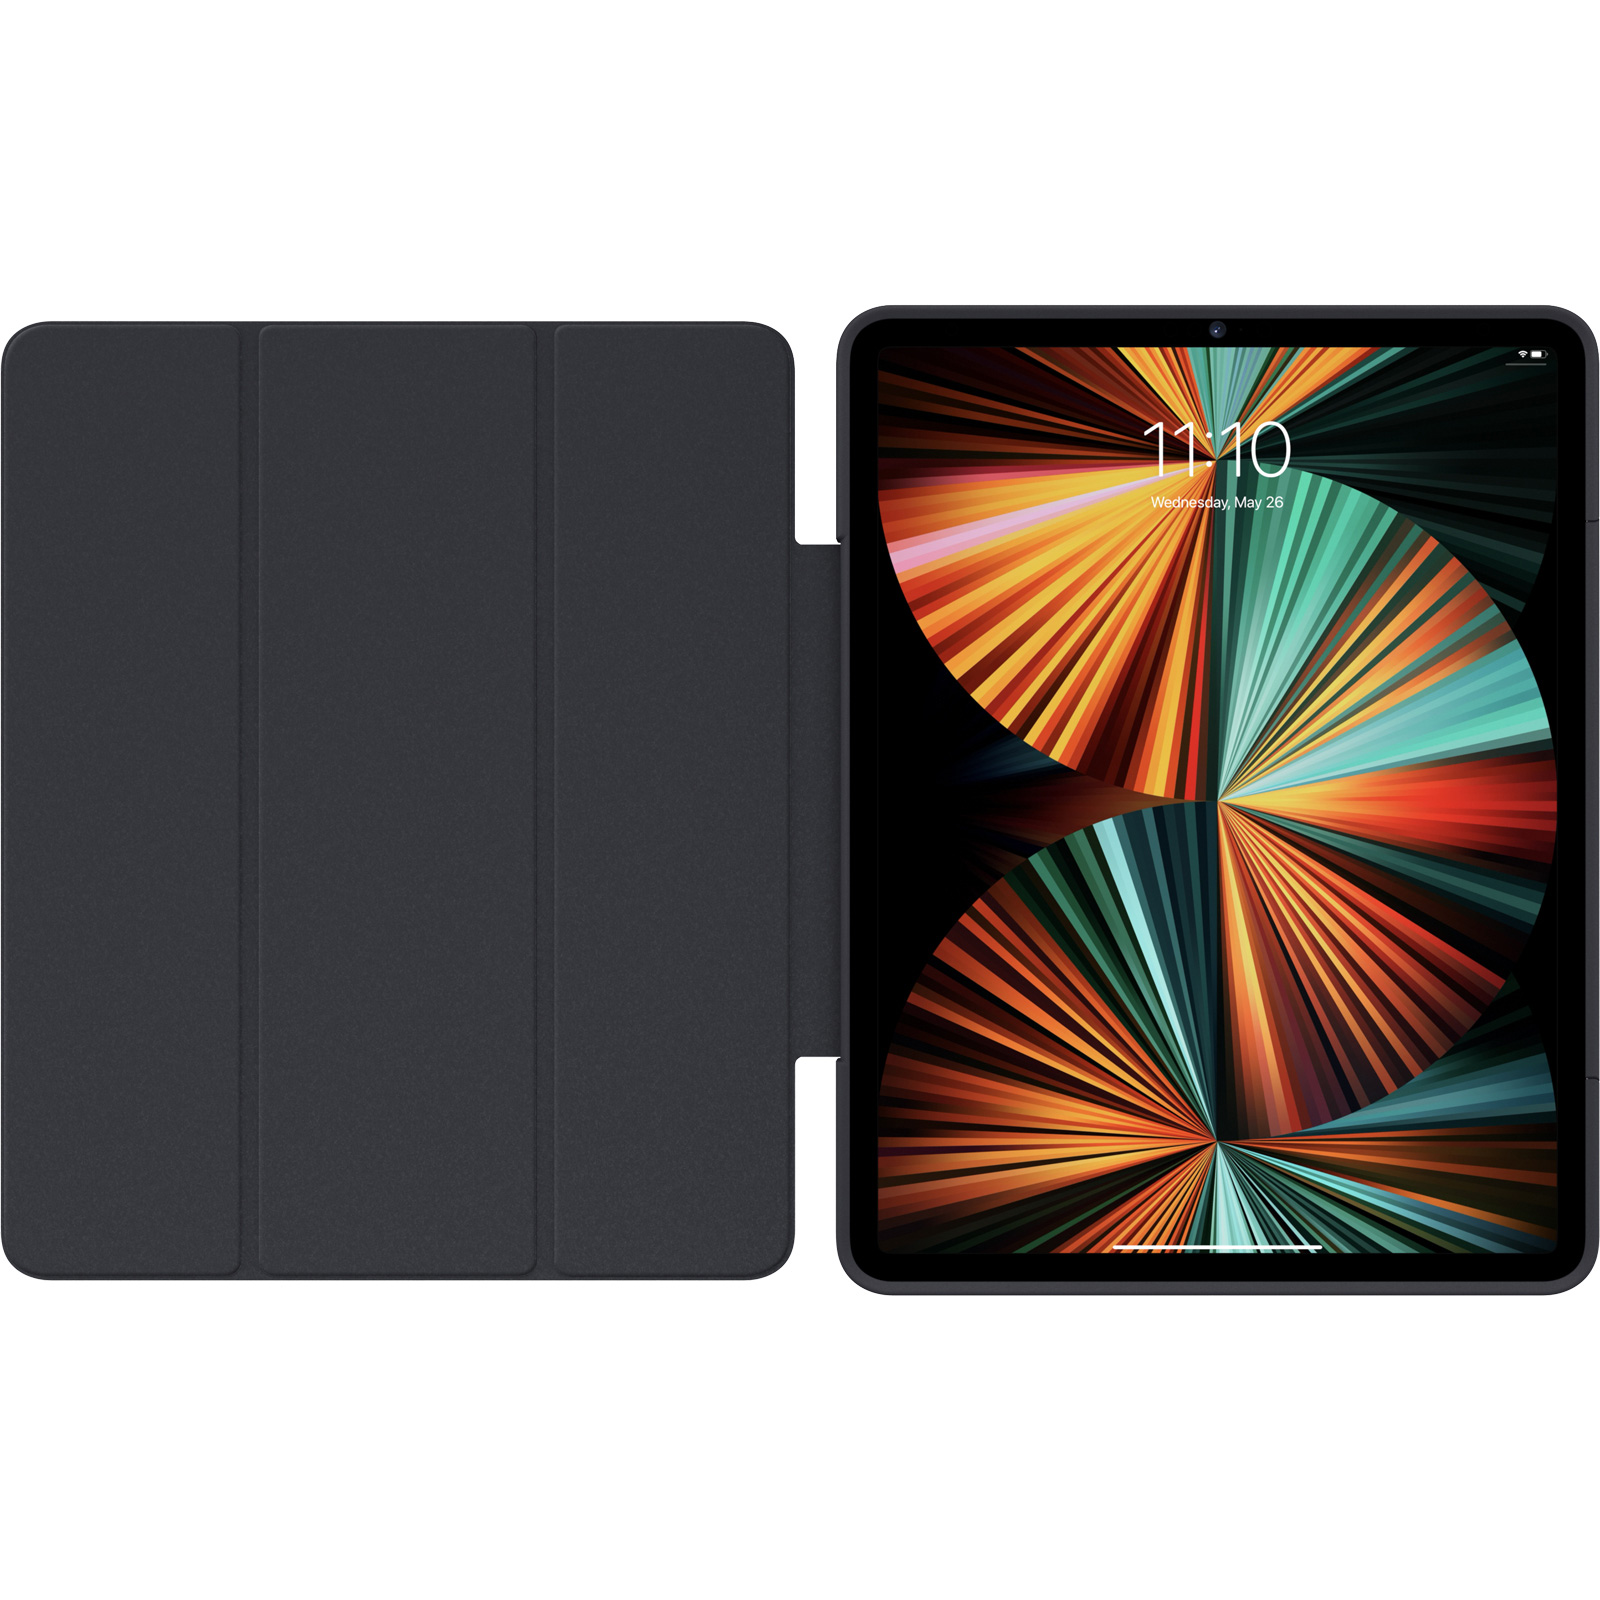 Coque Symmetry Series 360 Elite d'OtterBox pour iPad Pro 12,9 pouces (6ᵉ  génération) - Orange - Apple (FR)